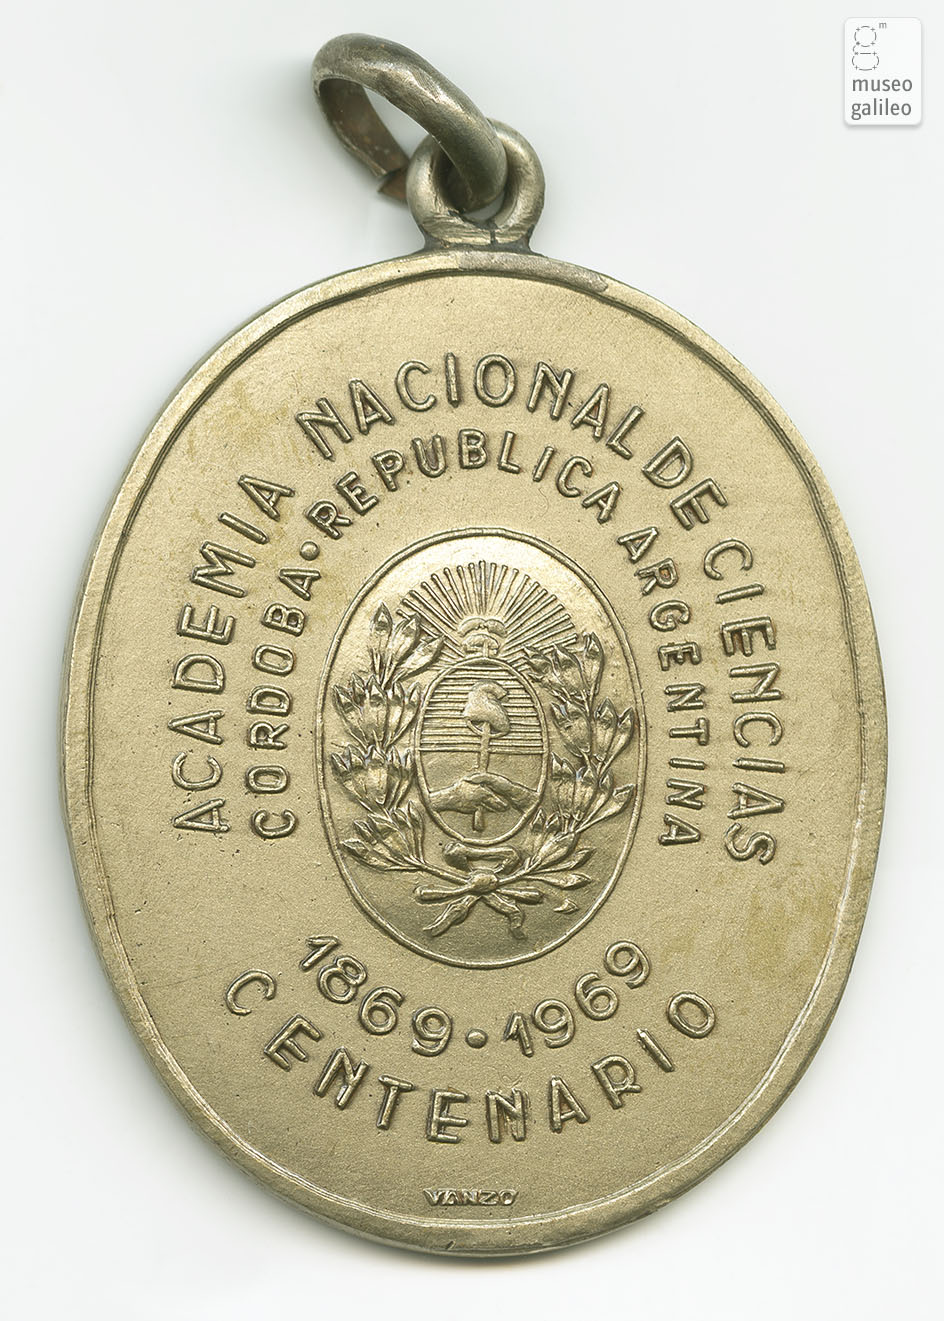 Centenario Accademia Nazionale di Scienze (Argentina, 1969) - diritto